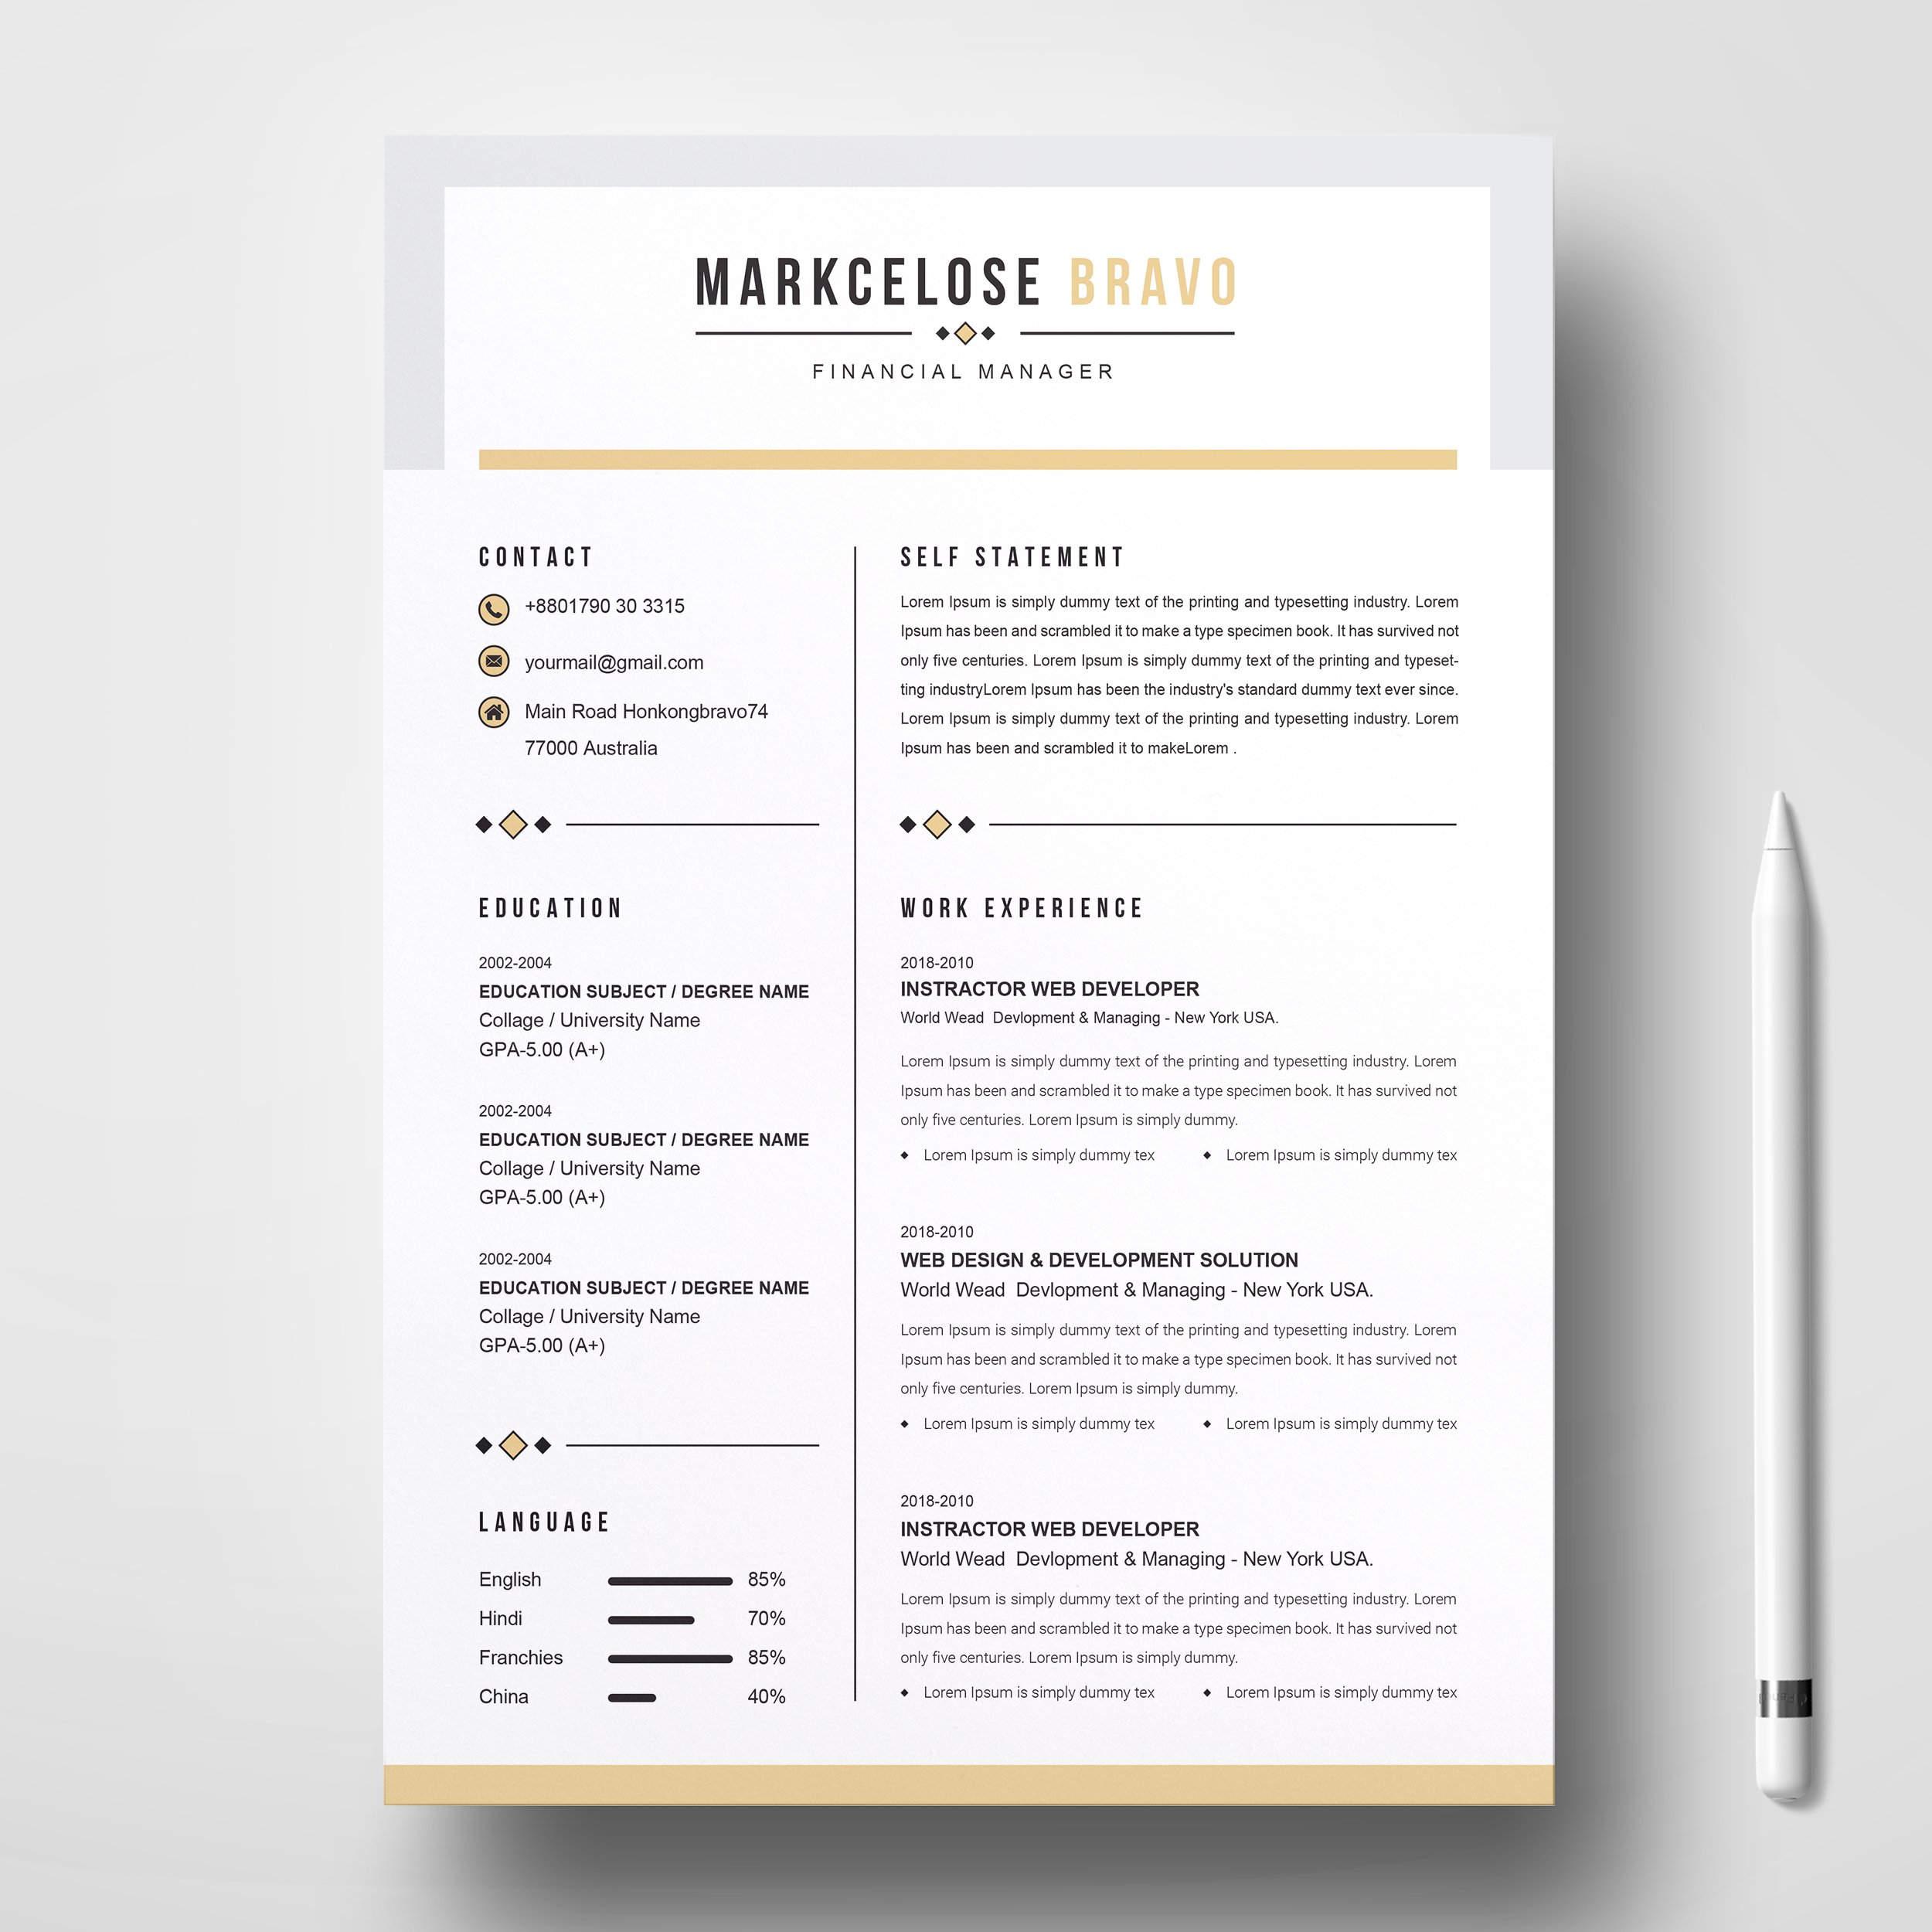 Curriculum Vita | Resume CV Design cover image.